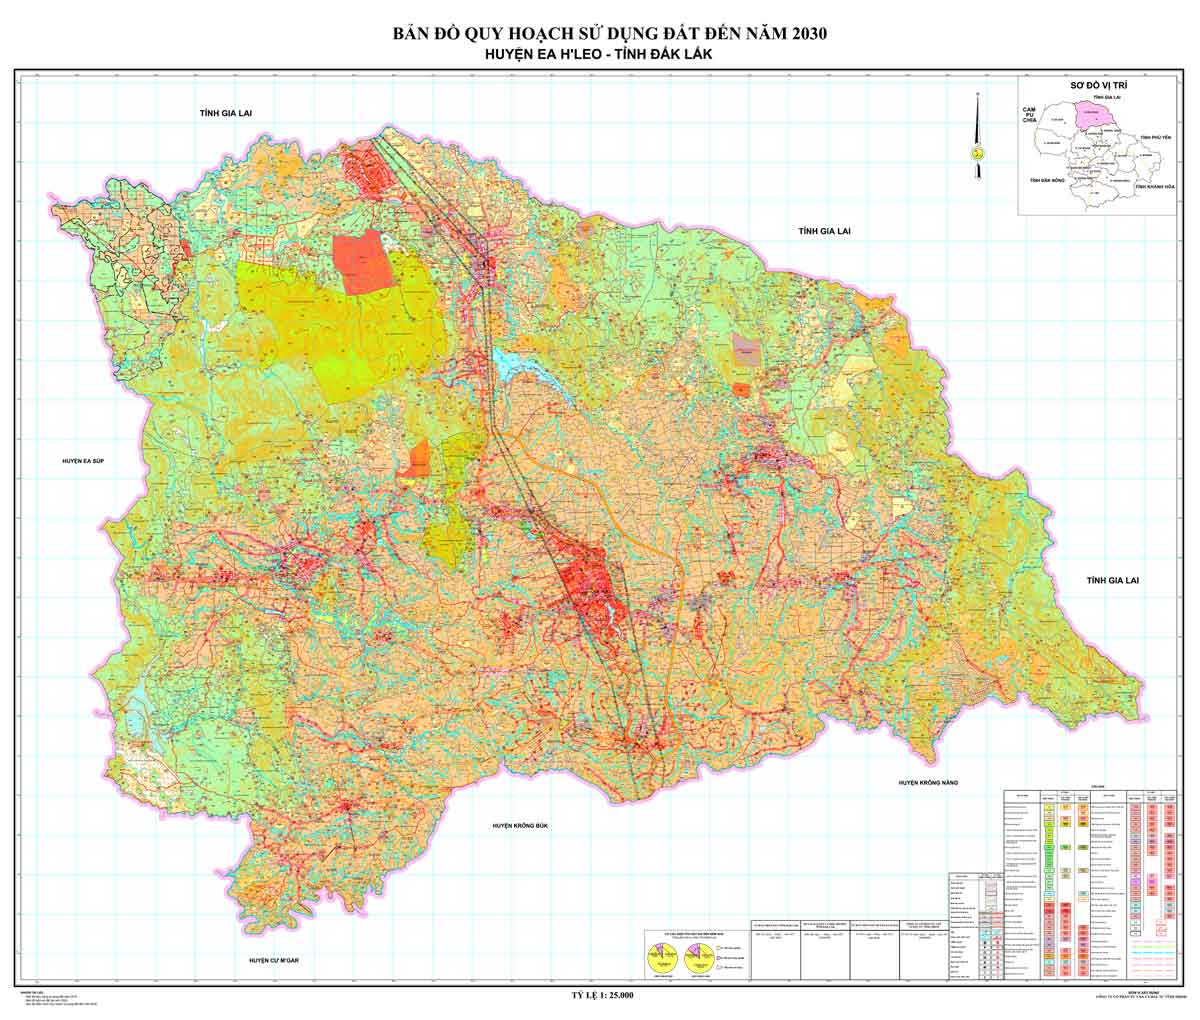 Bản đồ QHSDĐ huyện Ea H'leo đến năm 2030